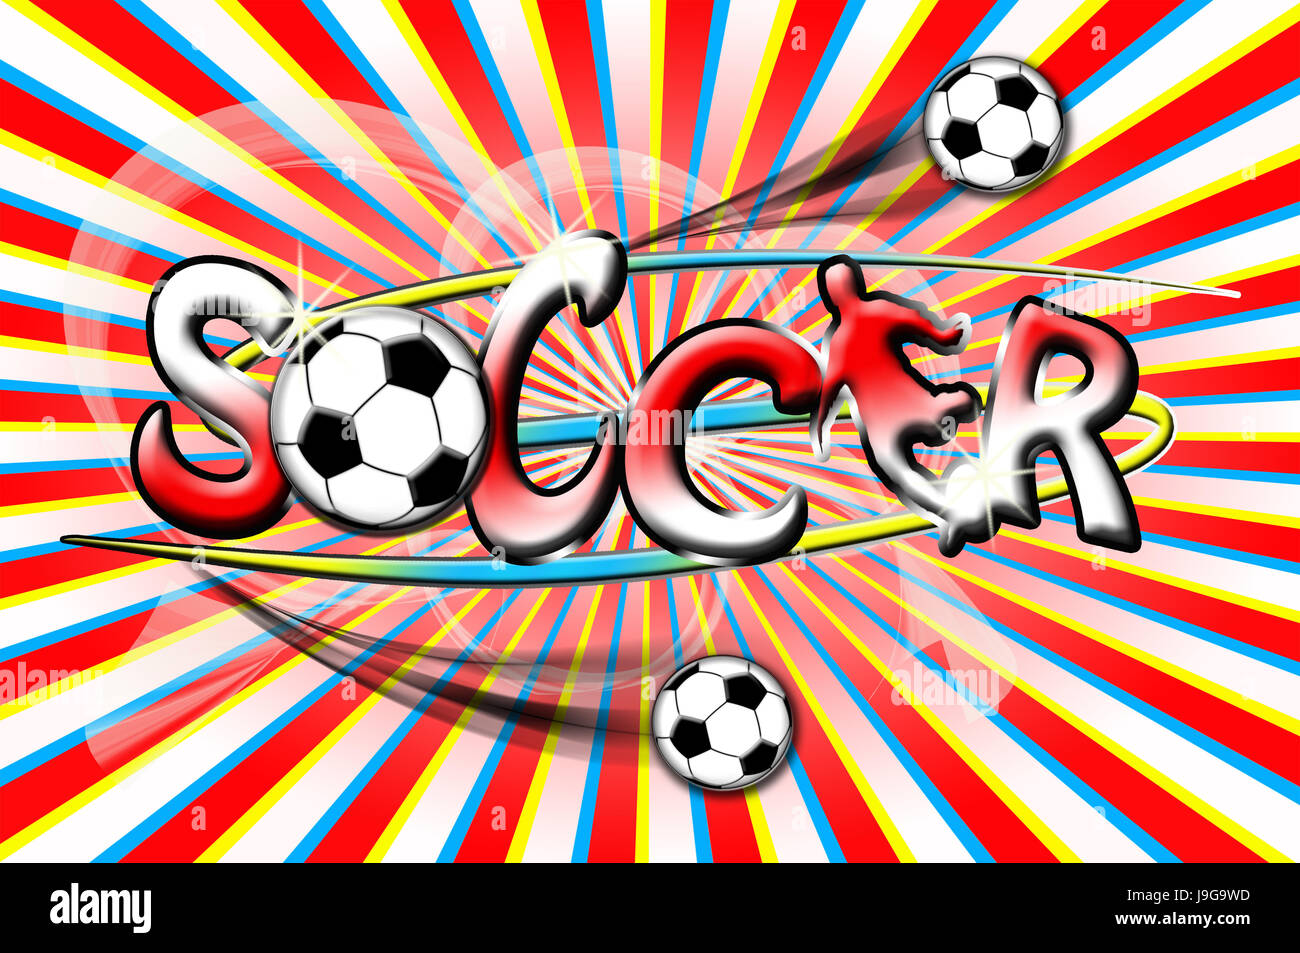 Le sport, les sports, la couleur, le joueur de soccer, football, balles et ballons, football, football, Banque D'Images